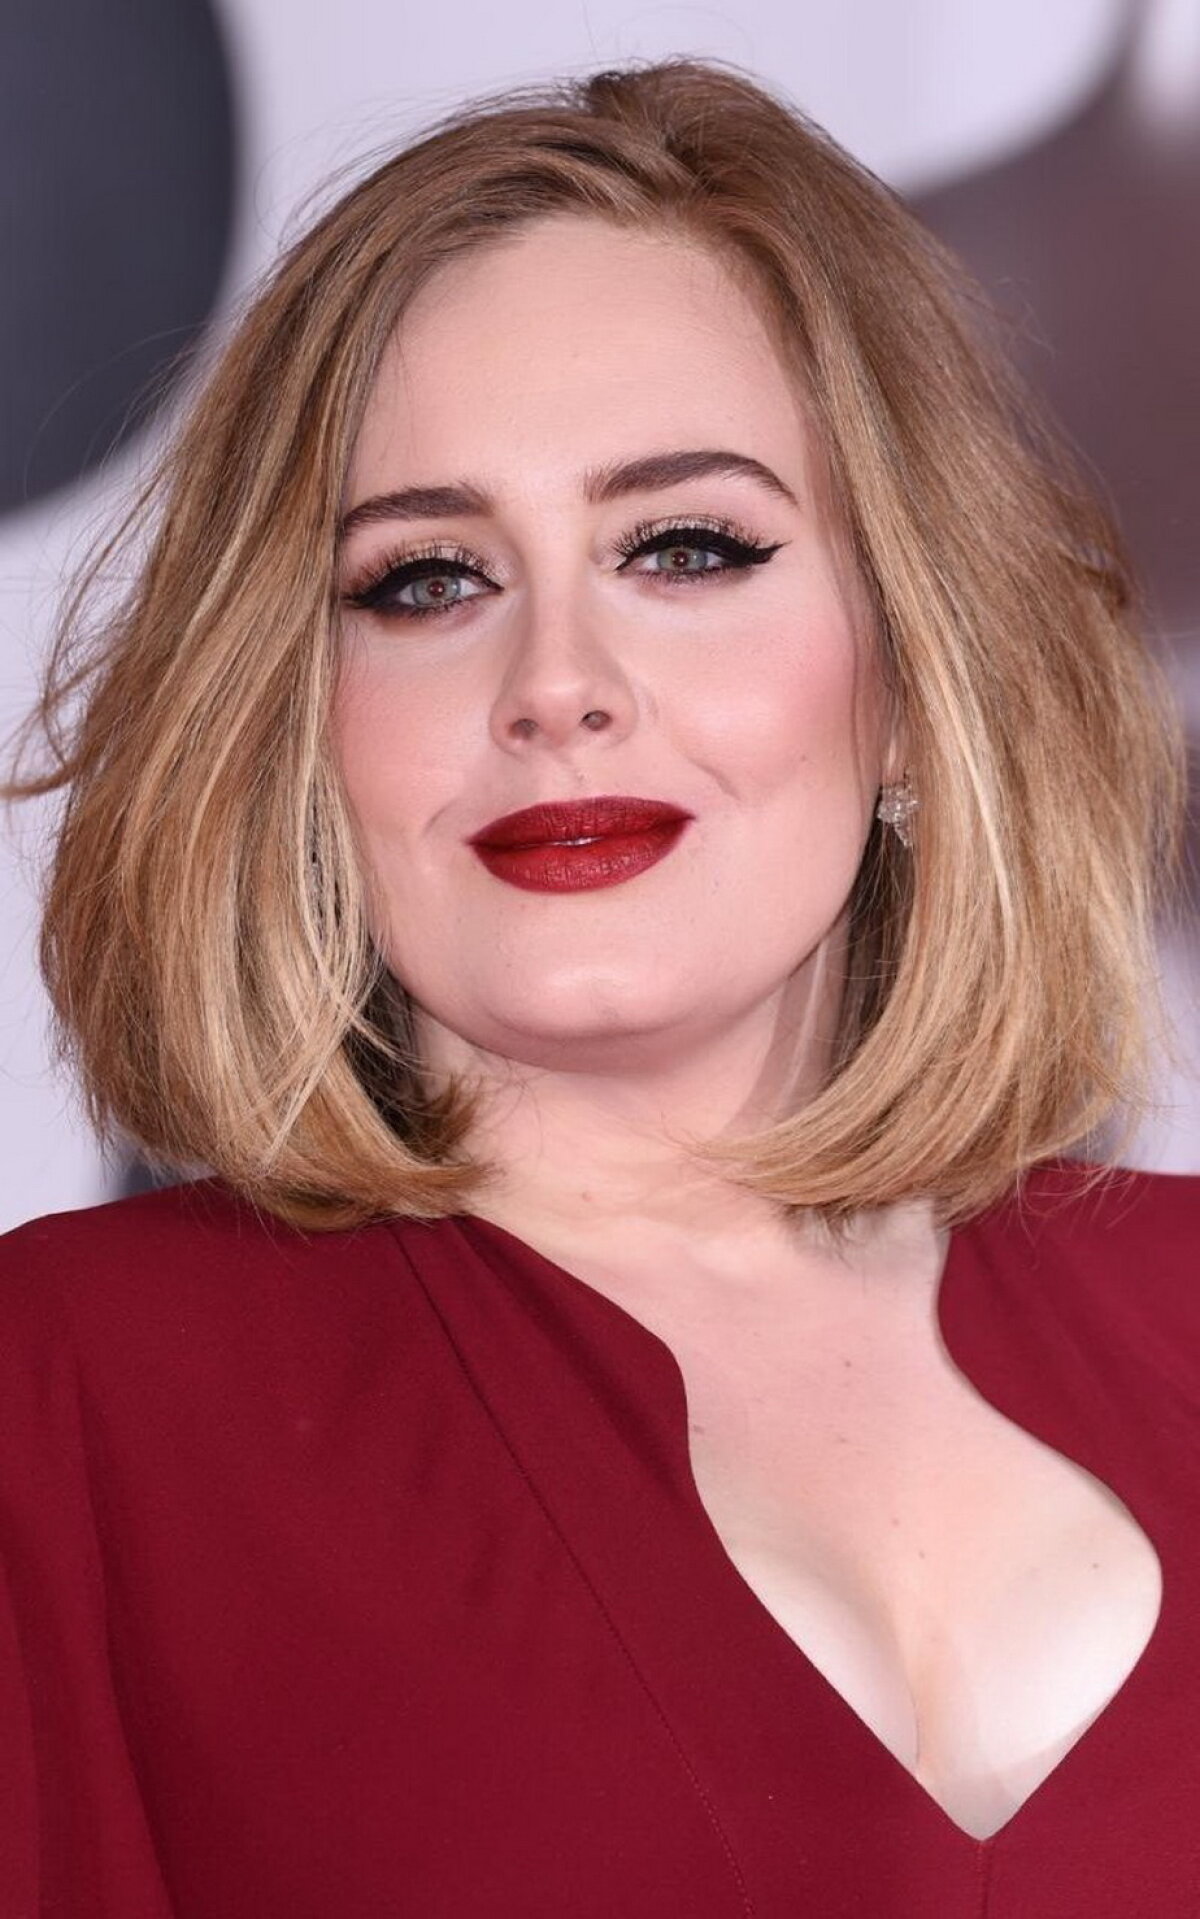 Fardată pare o păpuşică, însă vei avea un şoc când o vei vedea pe Adele fără pic de machiaj